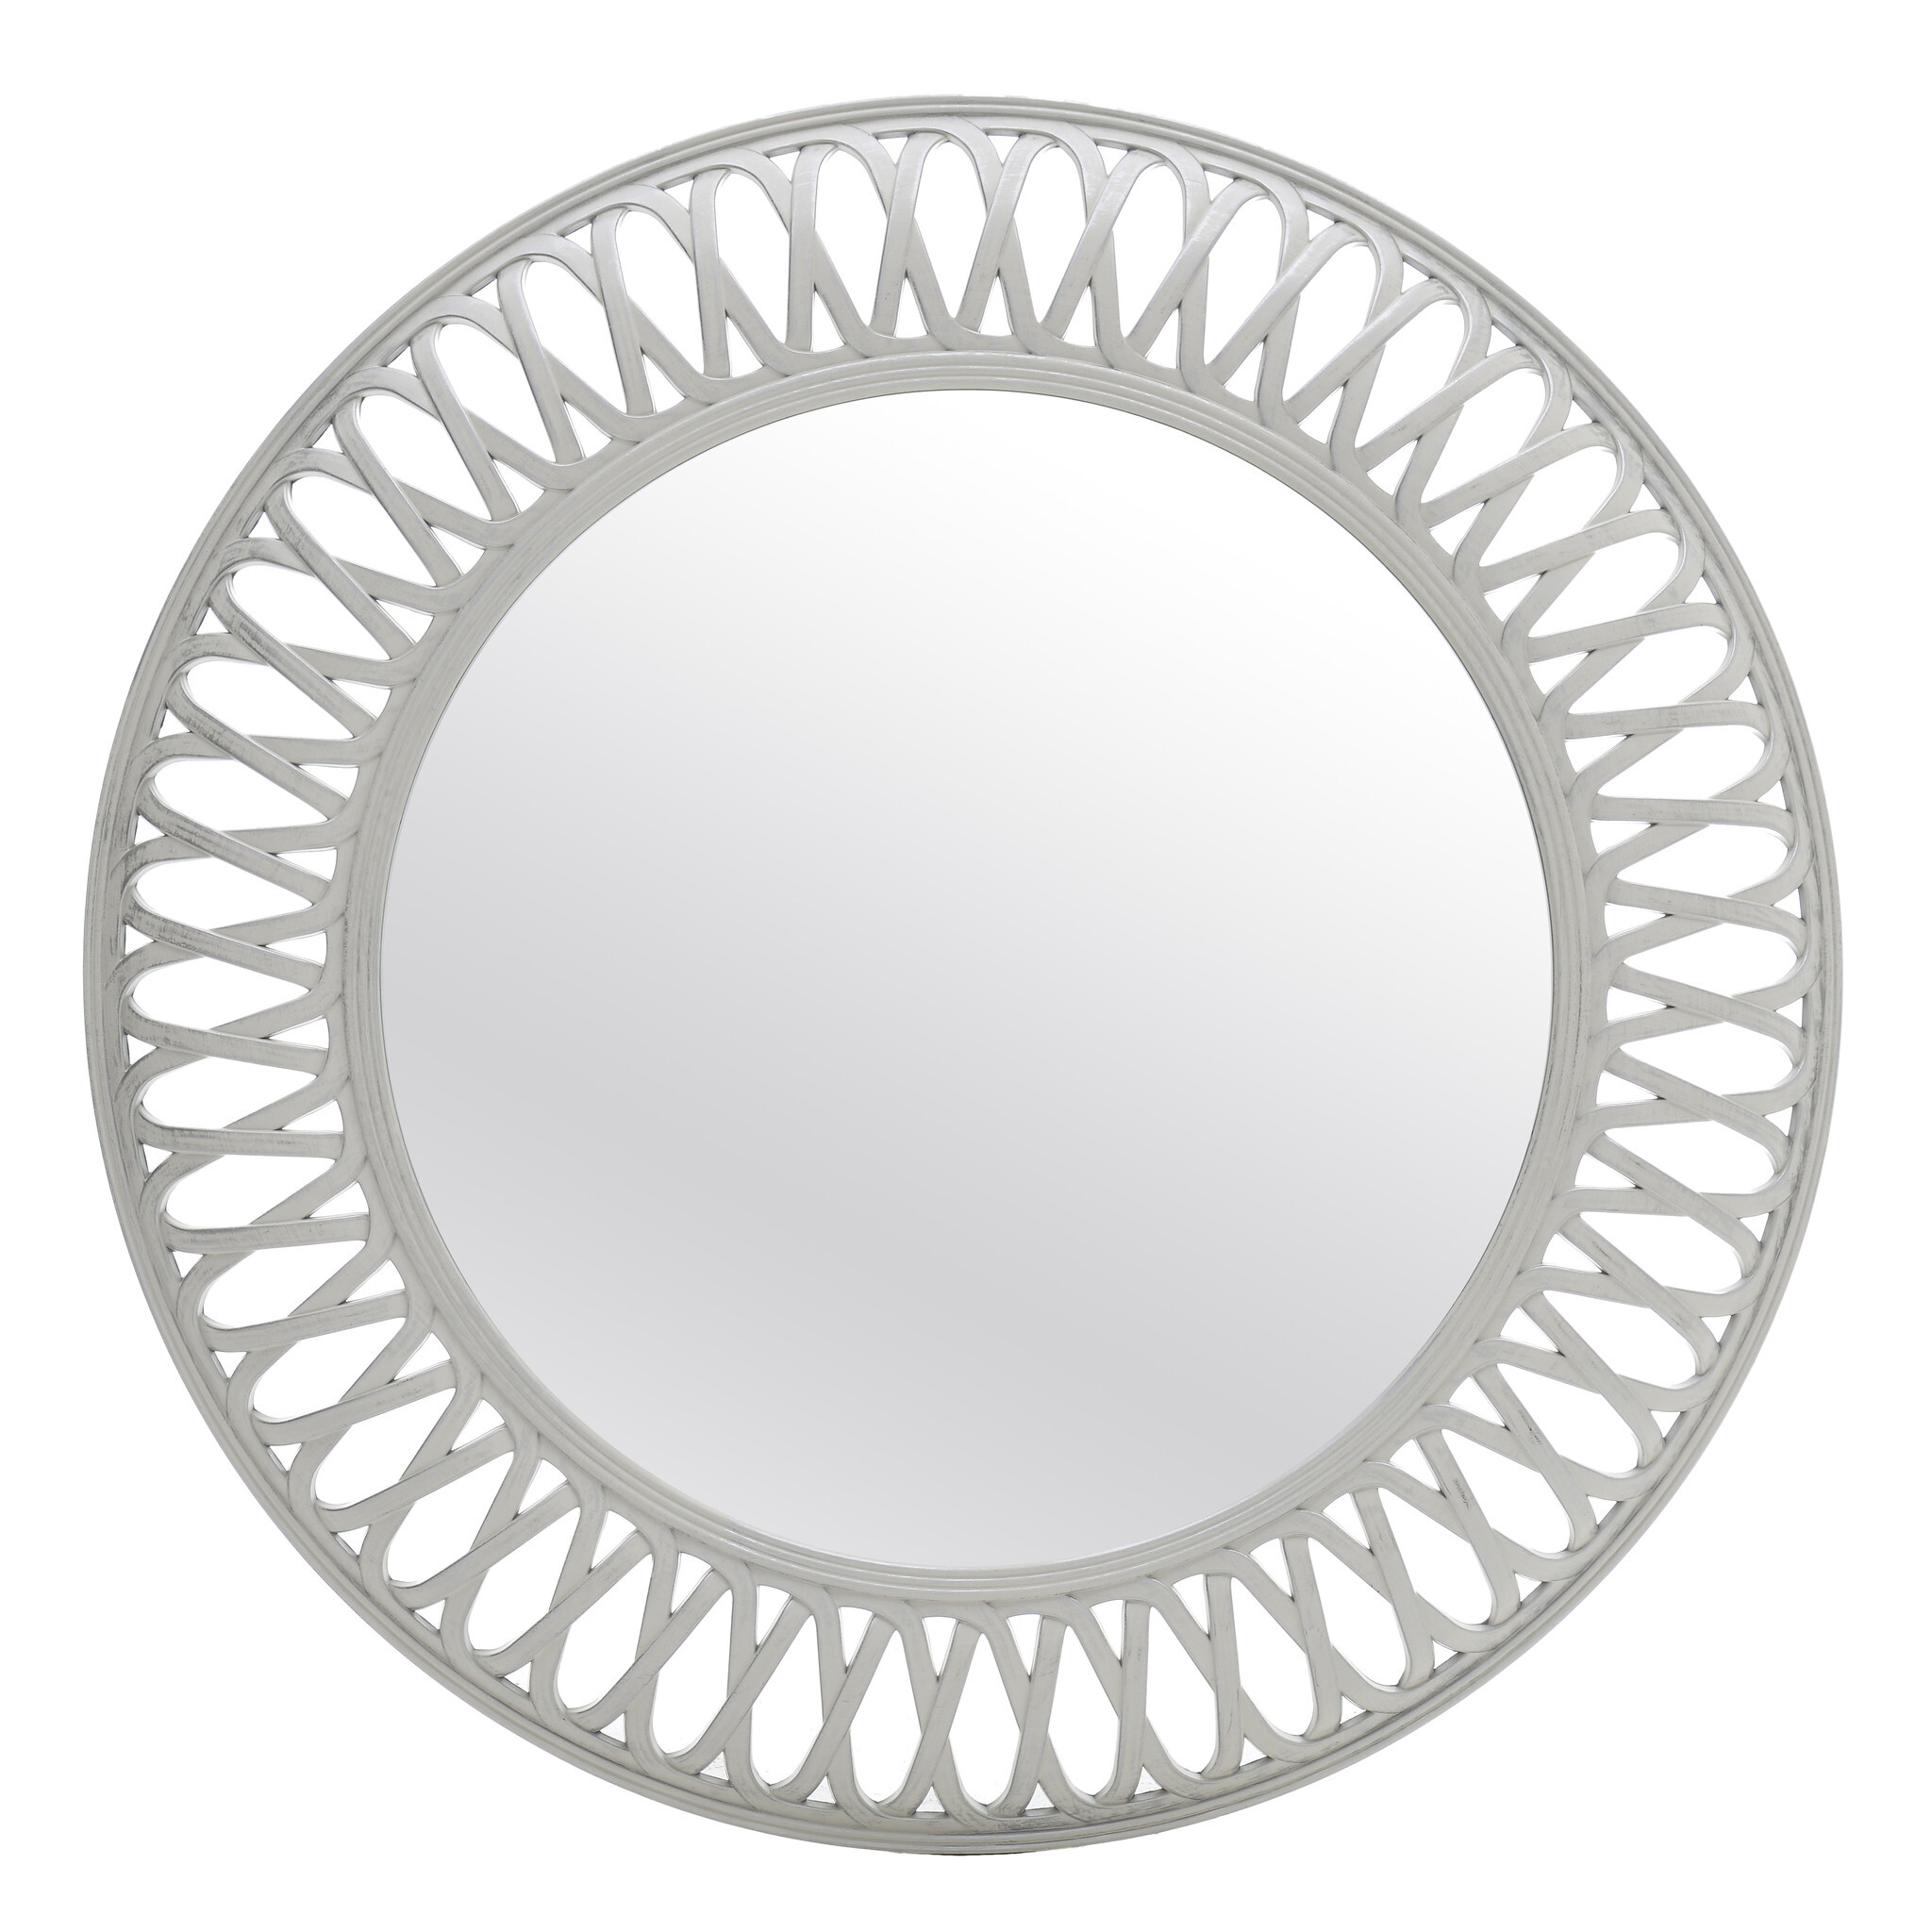 Круглое зеркало настенное белое 76 см